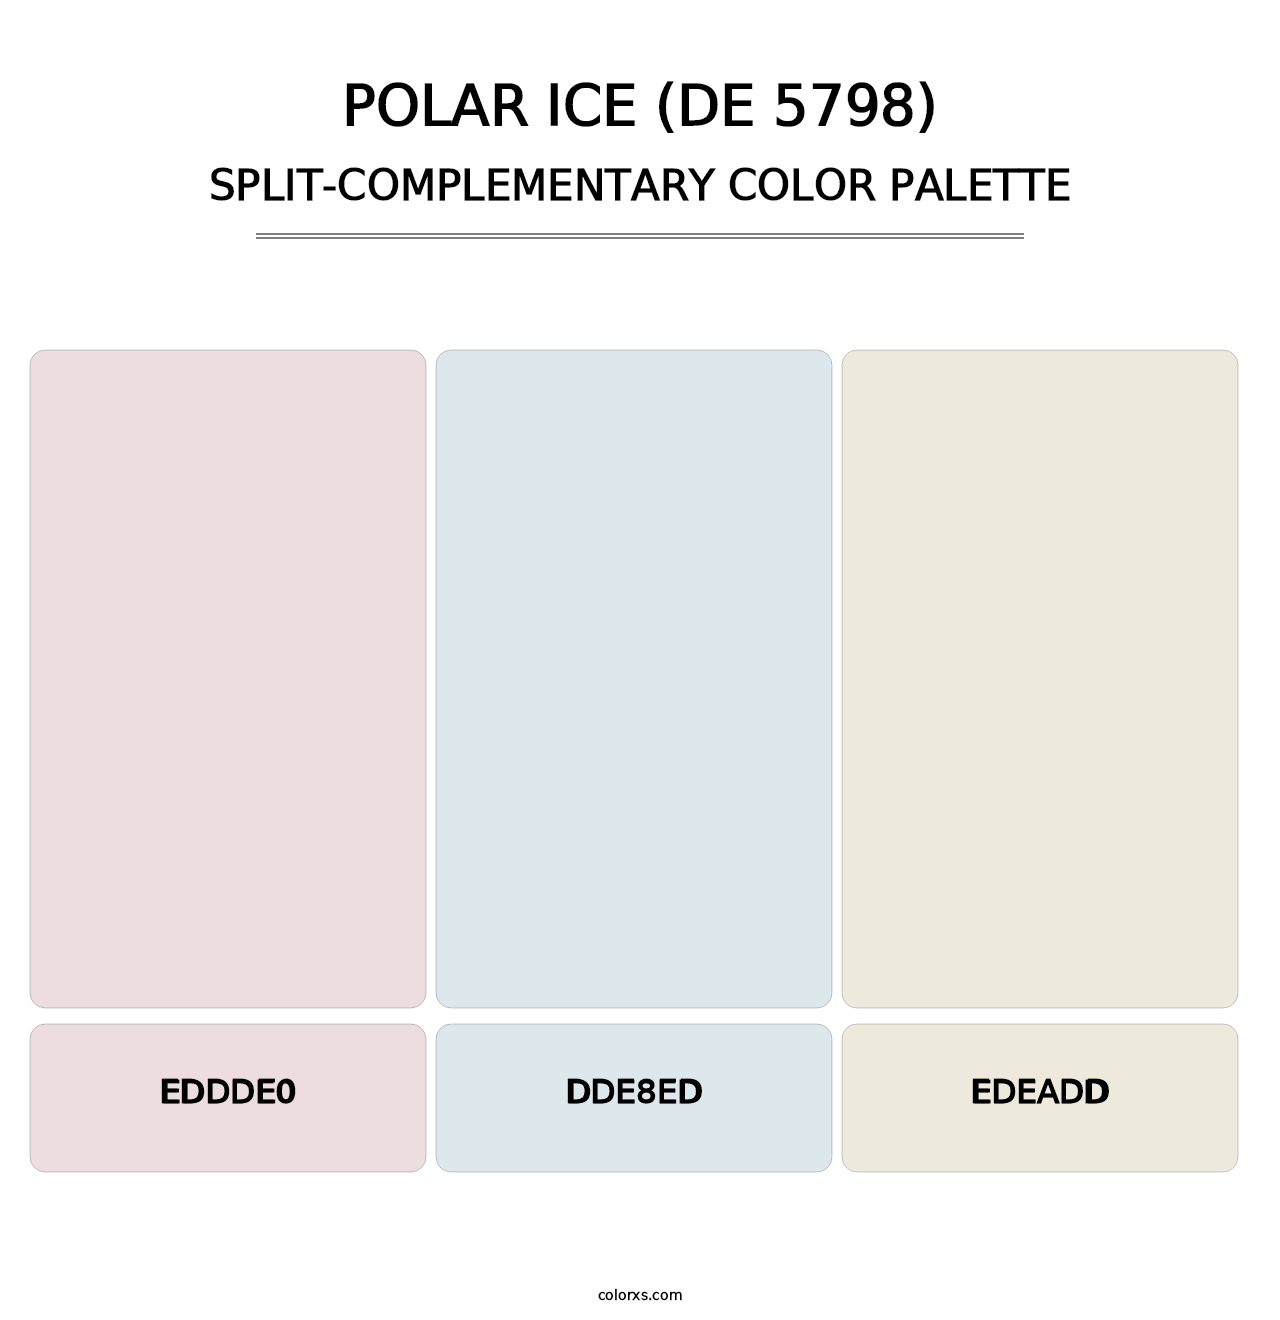 Polar Ice (DE 5798) - Split-Complementary Color Palette